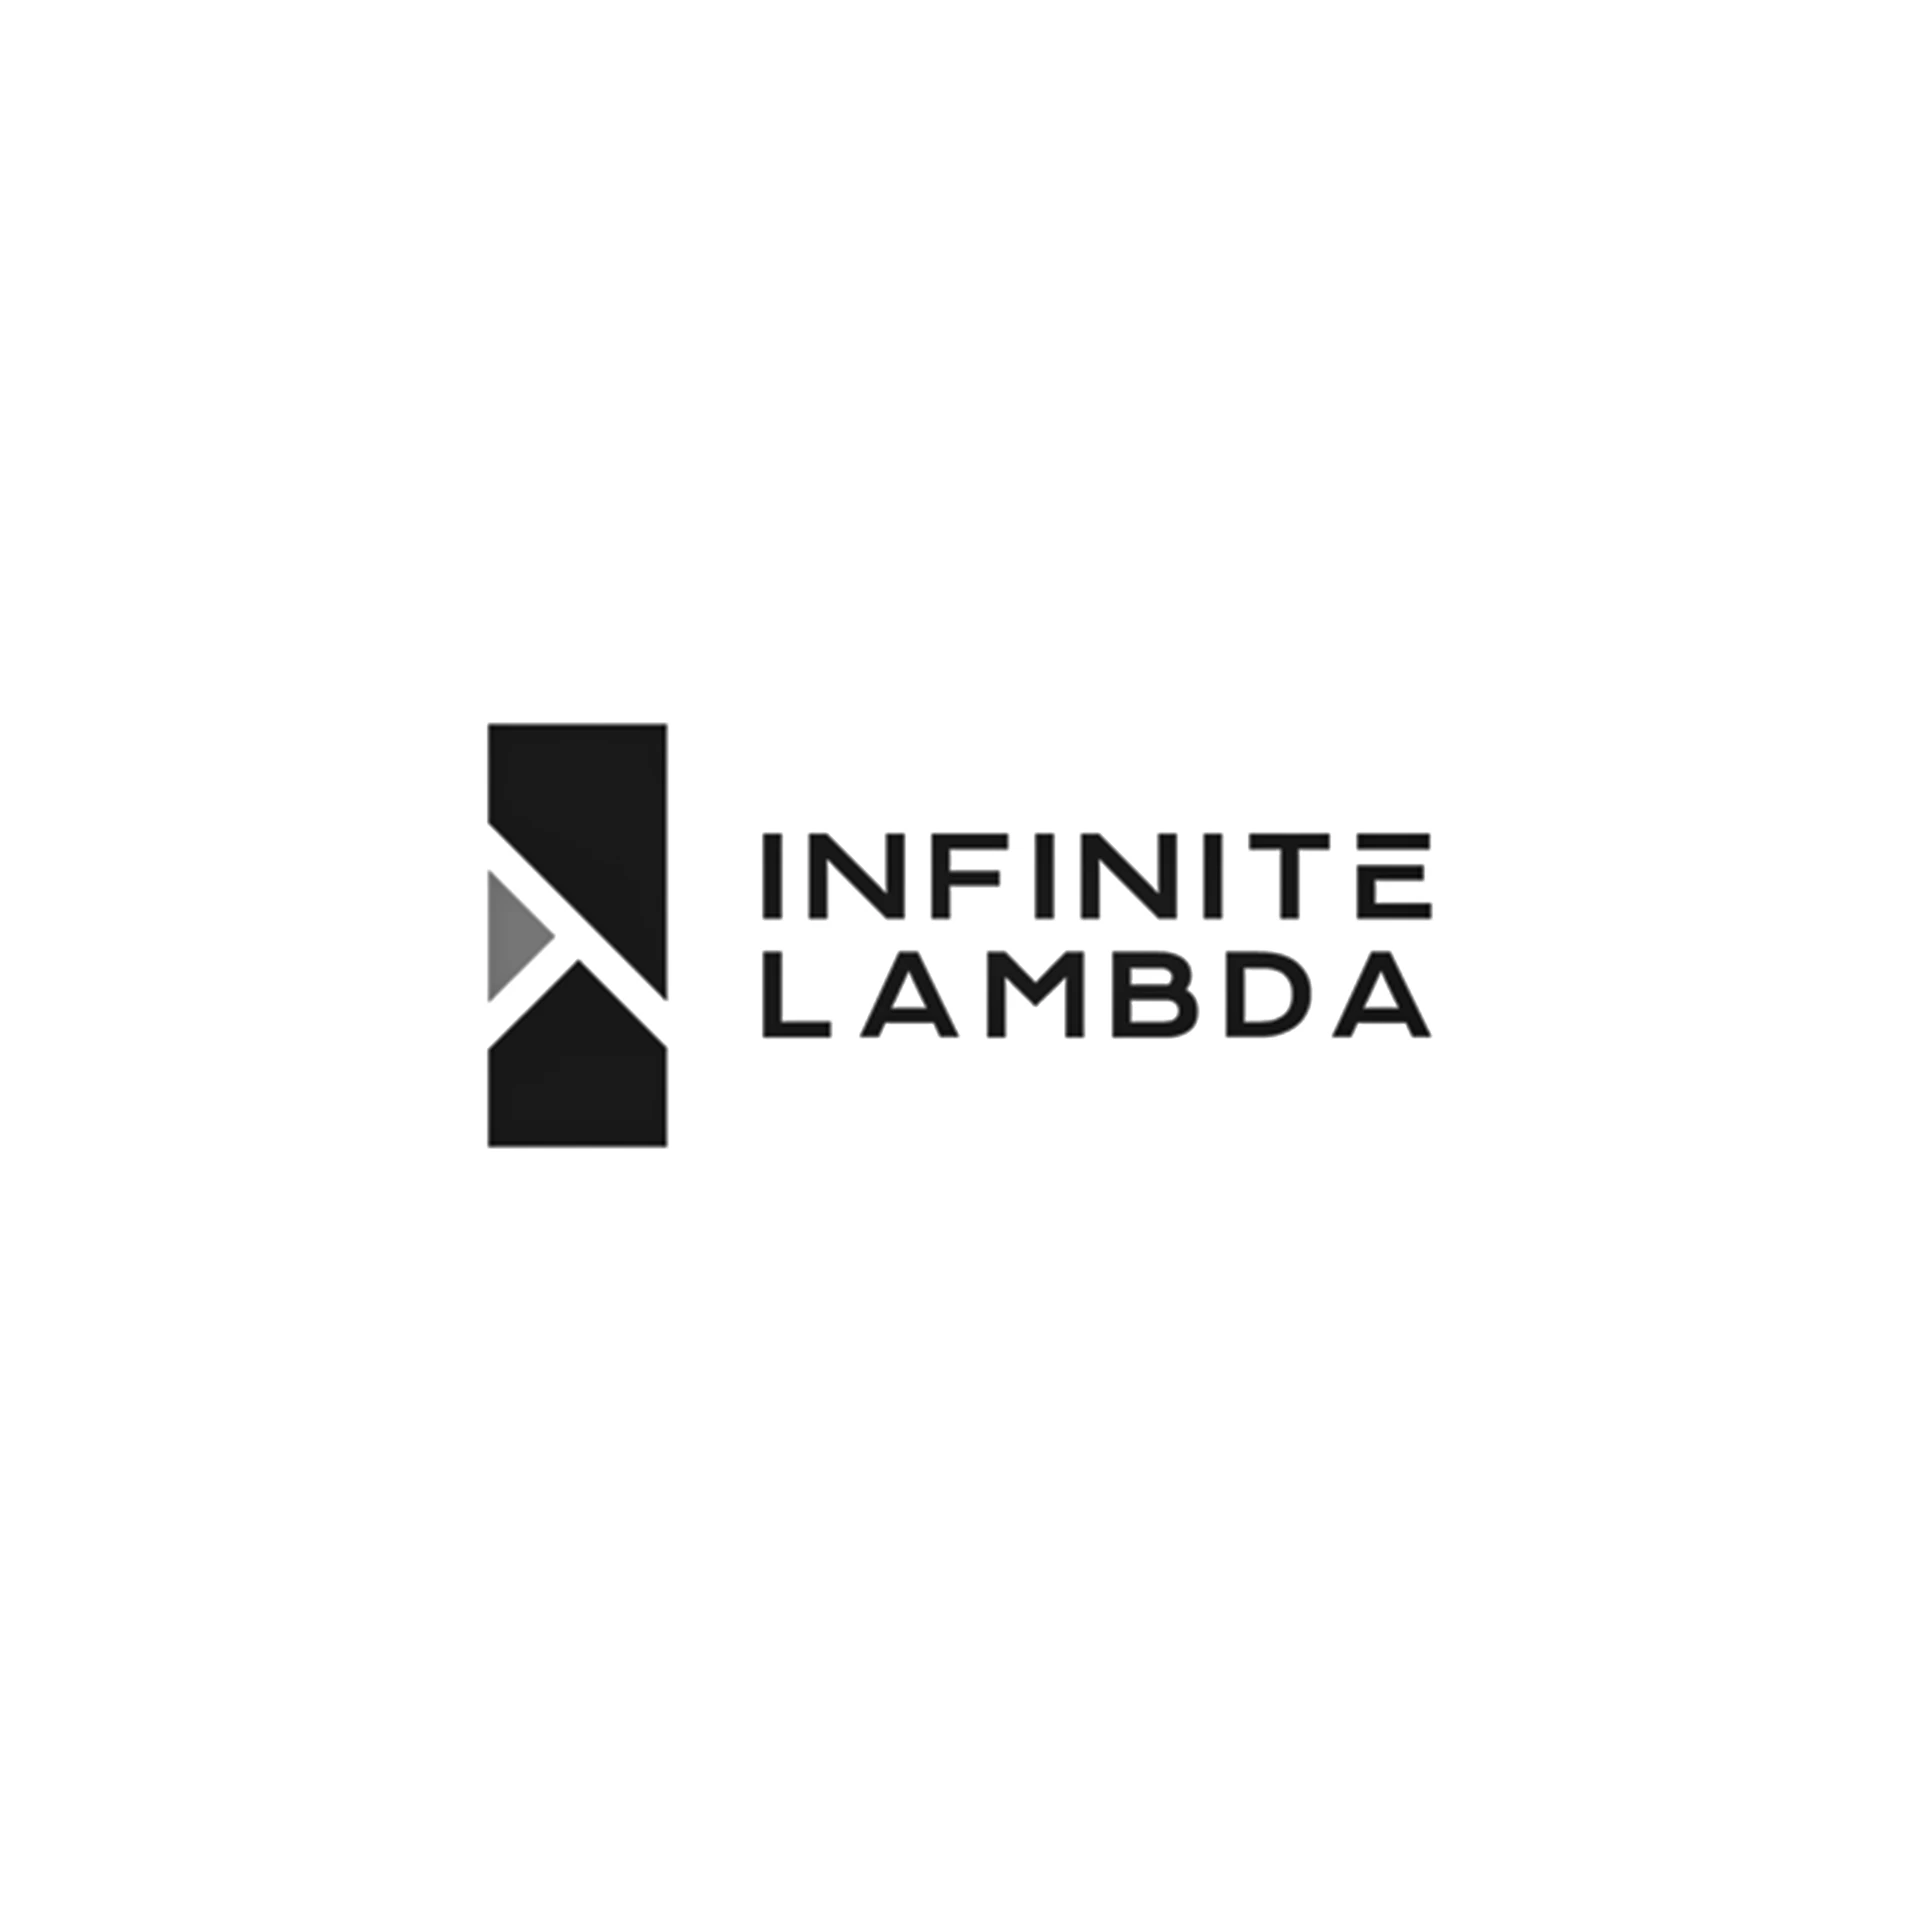 826-infinite-lambda-1697727952338.jpg